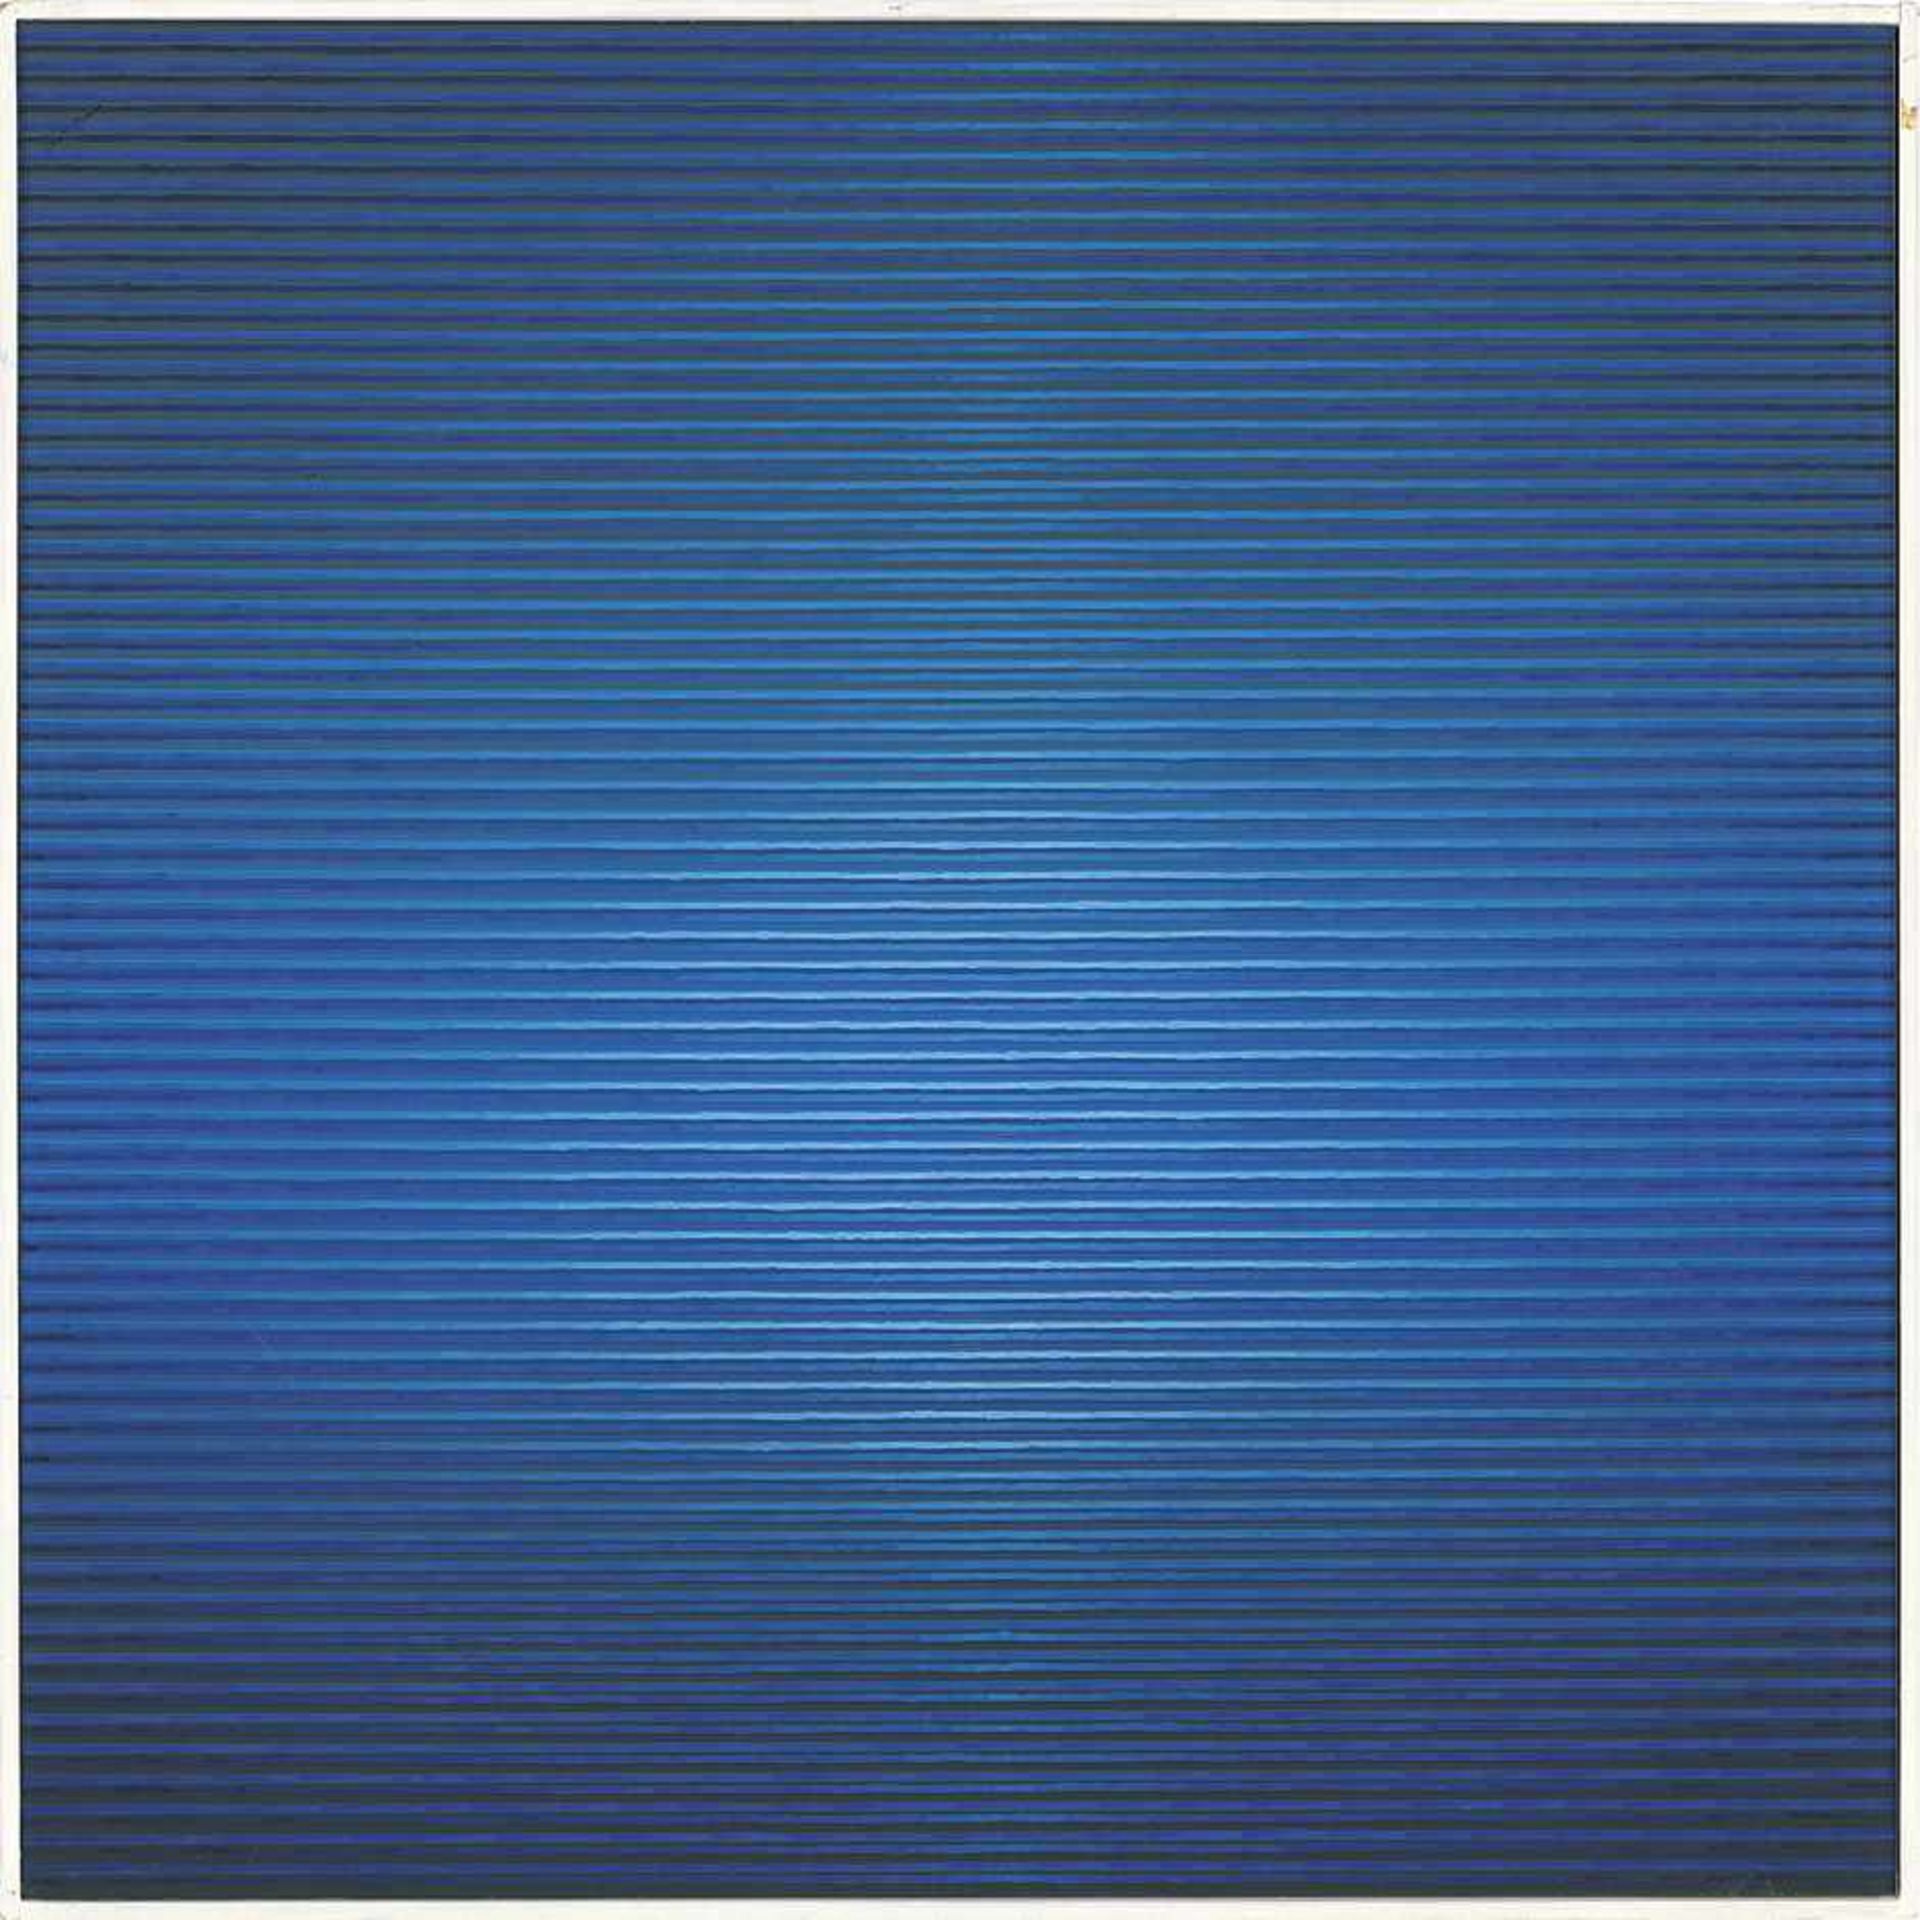 Scharein, Günter: Blauhöhung "Blauhöhung" Öl auf Hartschaumplatte. 1985. 50 x 50 cm. Verso mit